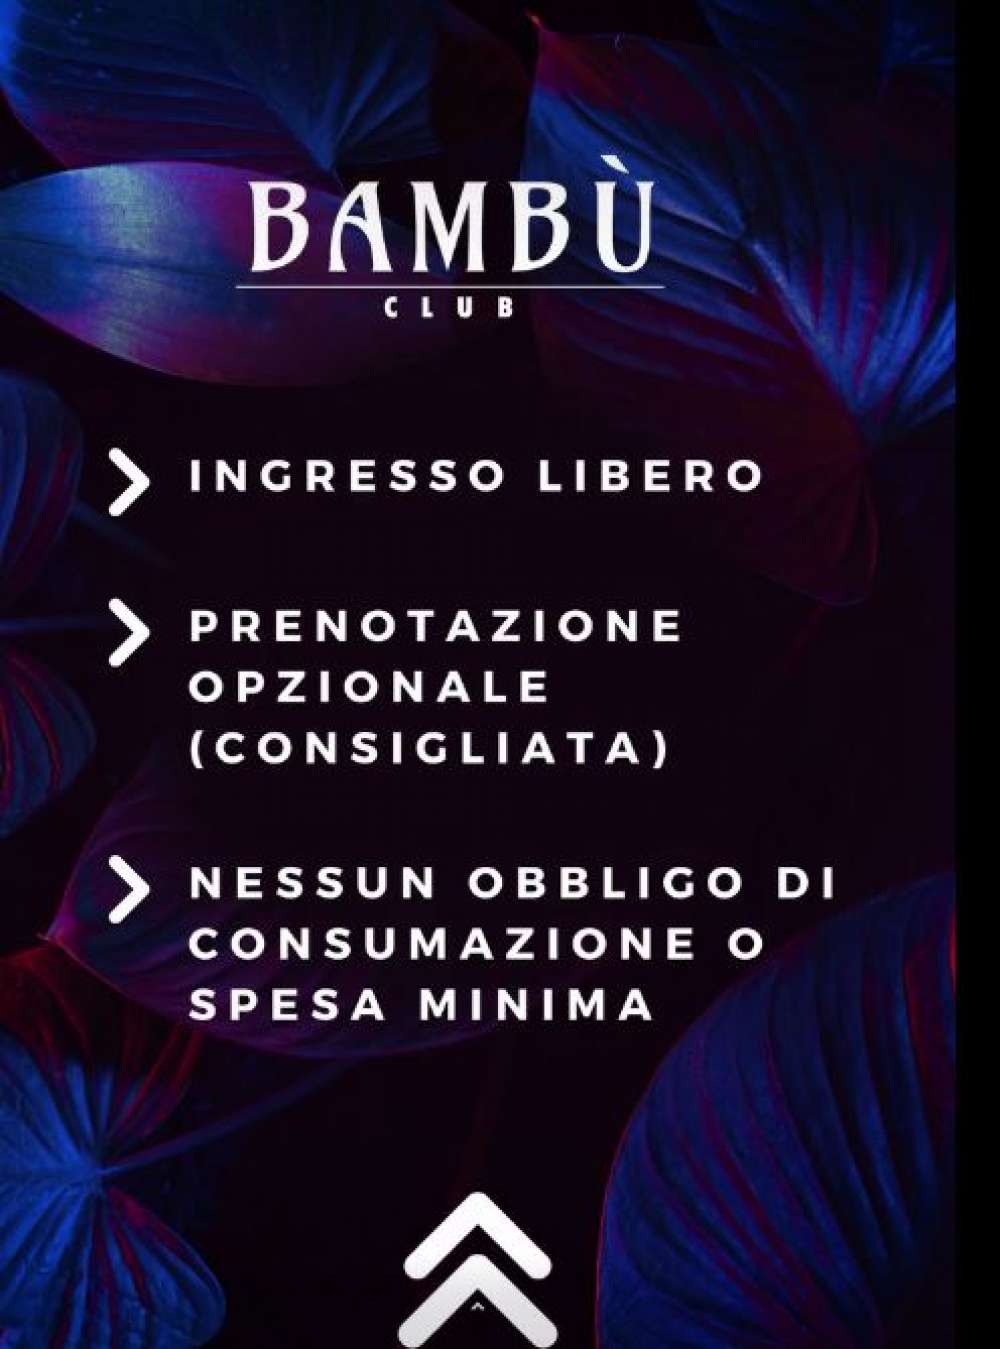 Bambù Club Arezzo - 25, 26 e 27 Luglio